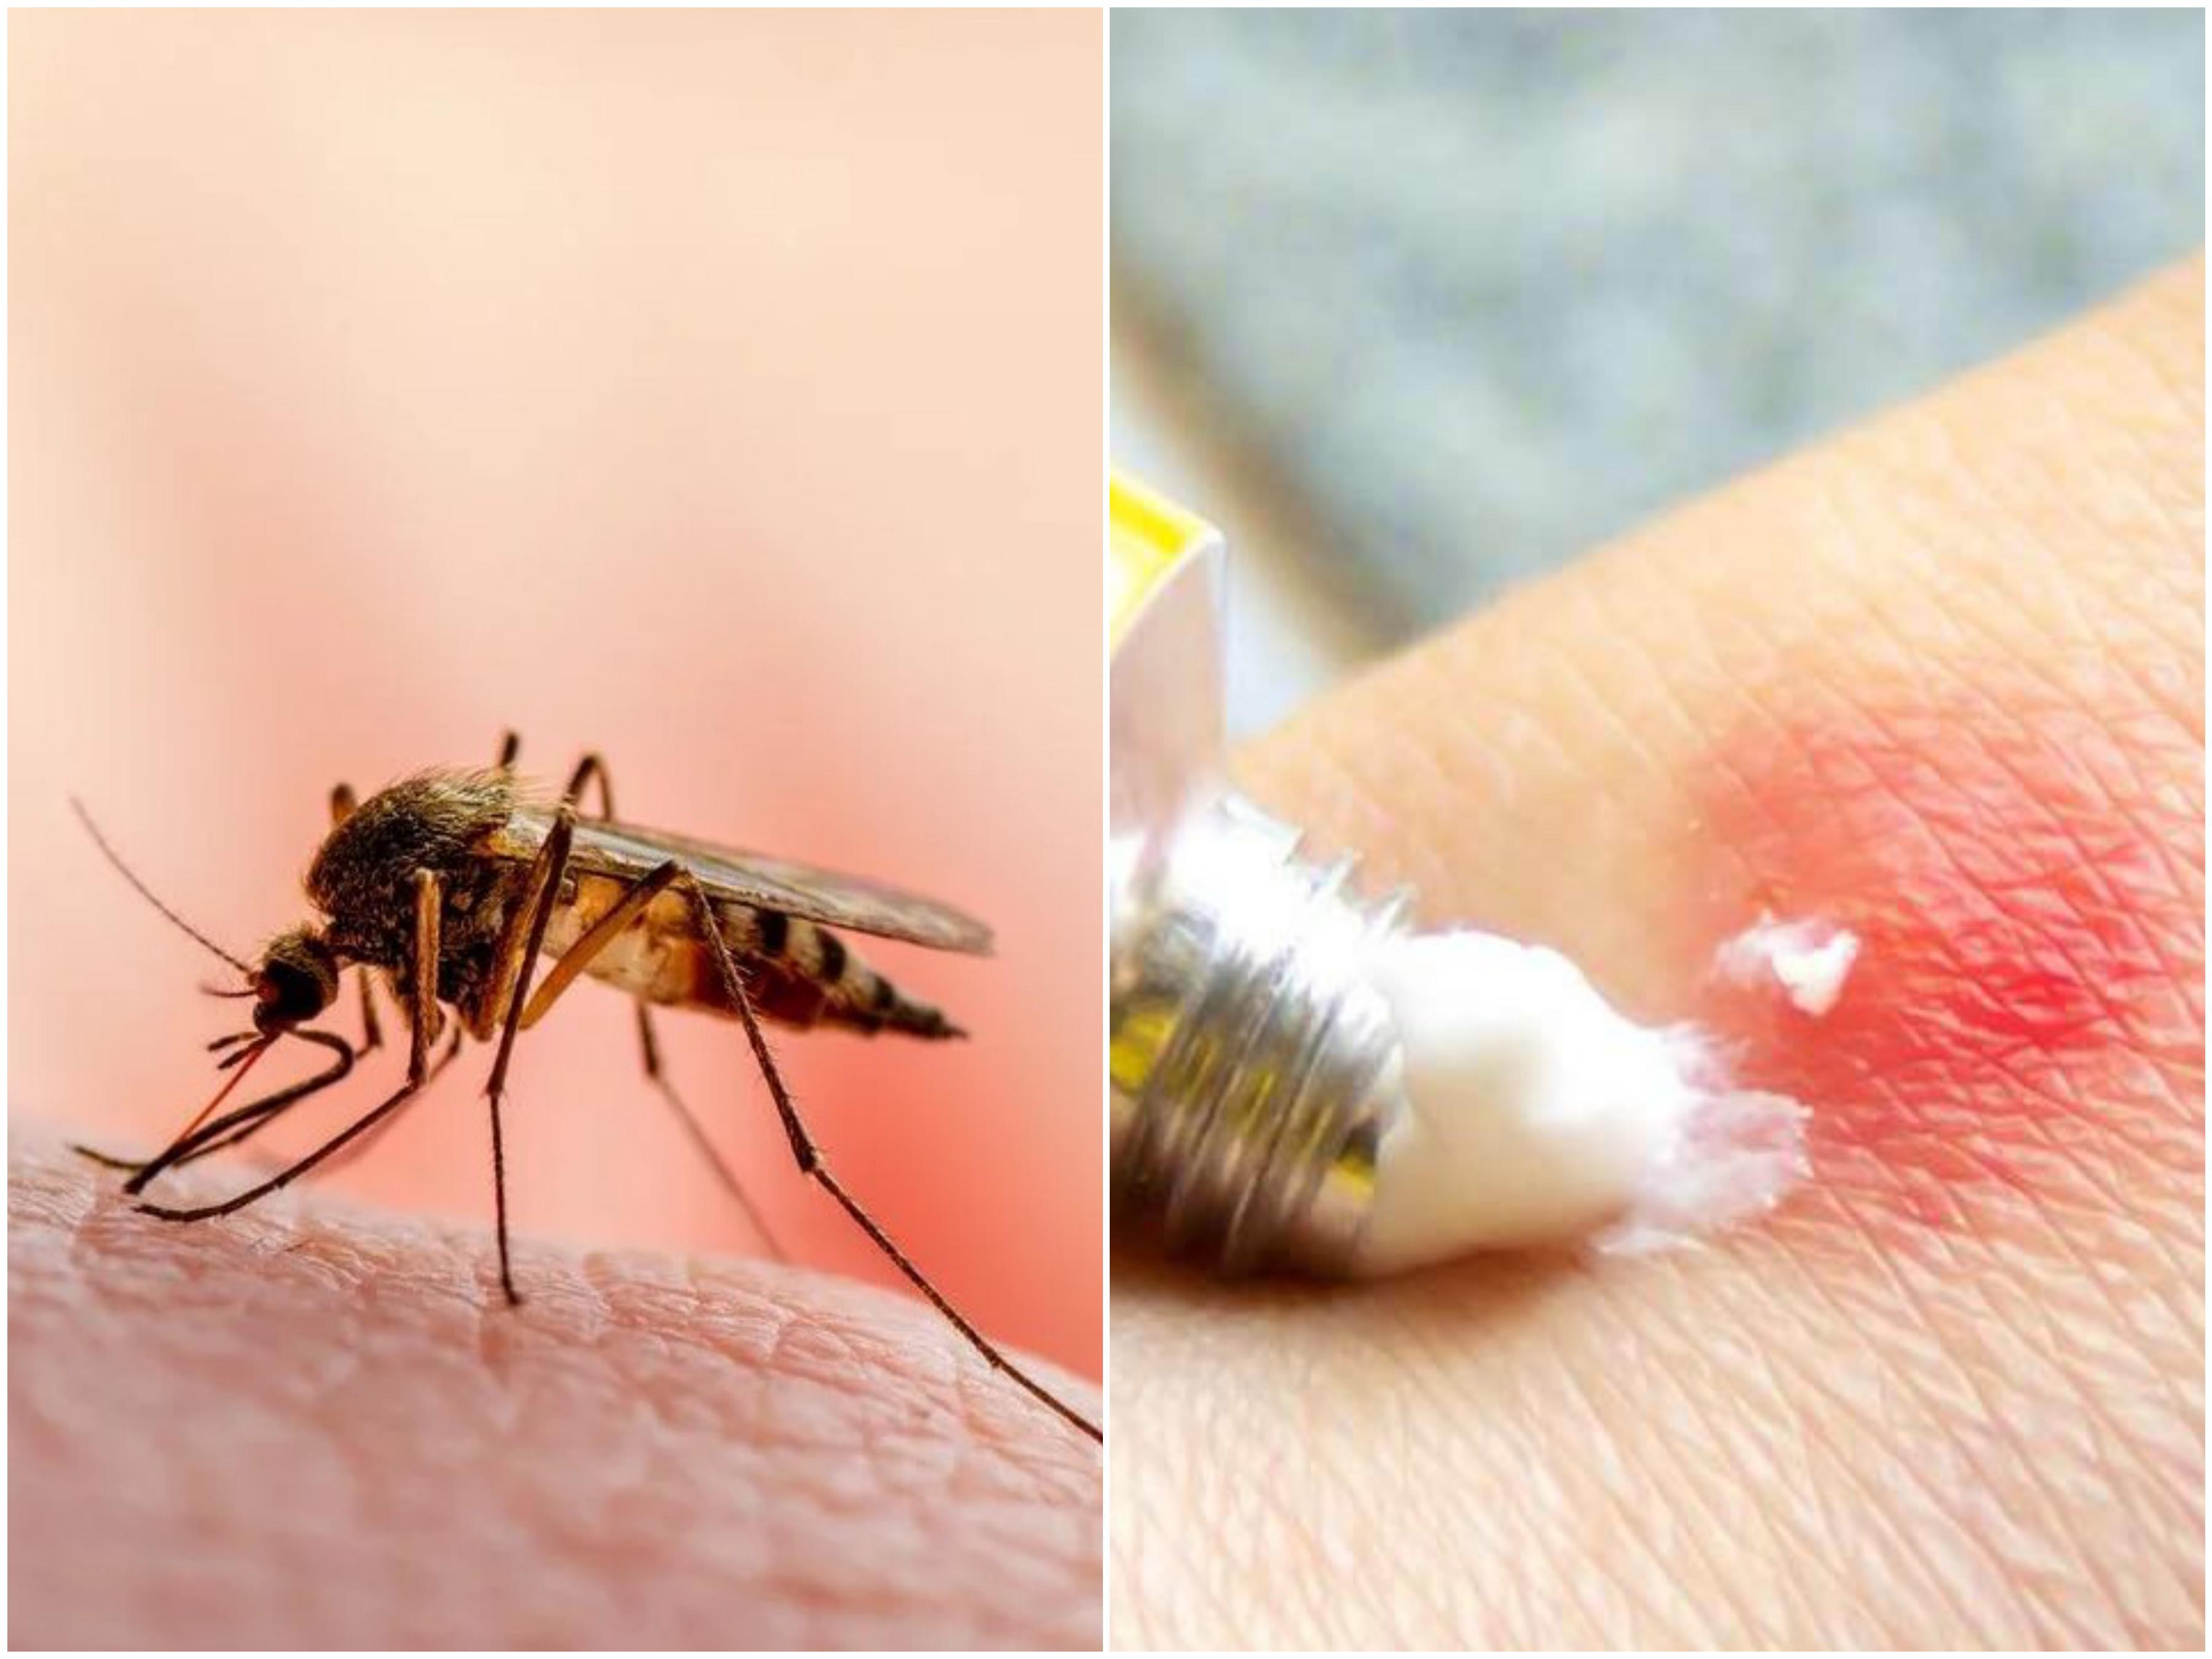 Imunologinja otkrila efikasno sredstvo u borbi protiv svraba nakon uboda komarca